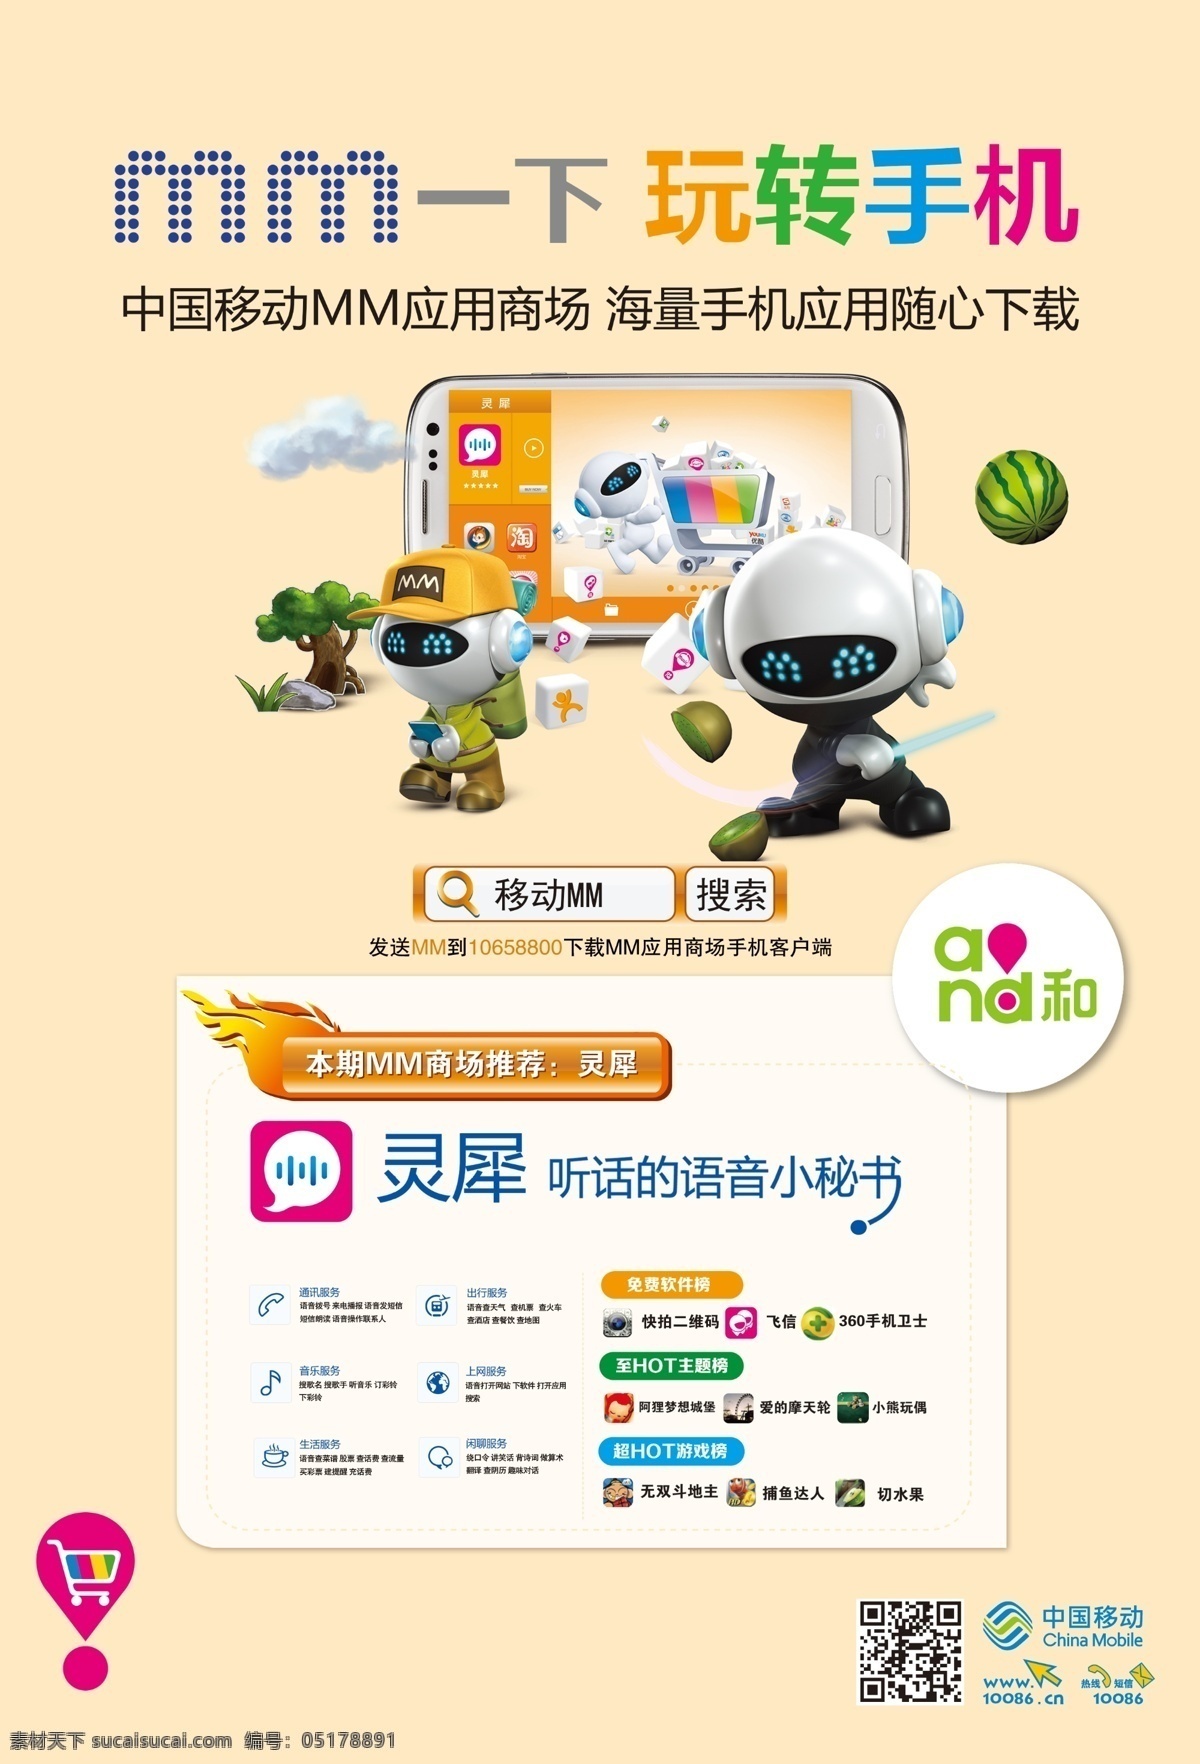 广告设计模板 卡通图 漫画 手机 源文件 中国移动标志 灵犀 玩 转 模板下载 玩转手机 mm一下 其他海报设计